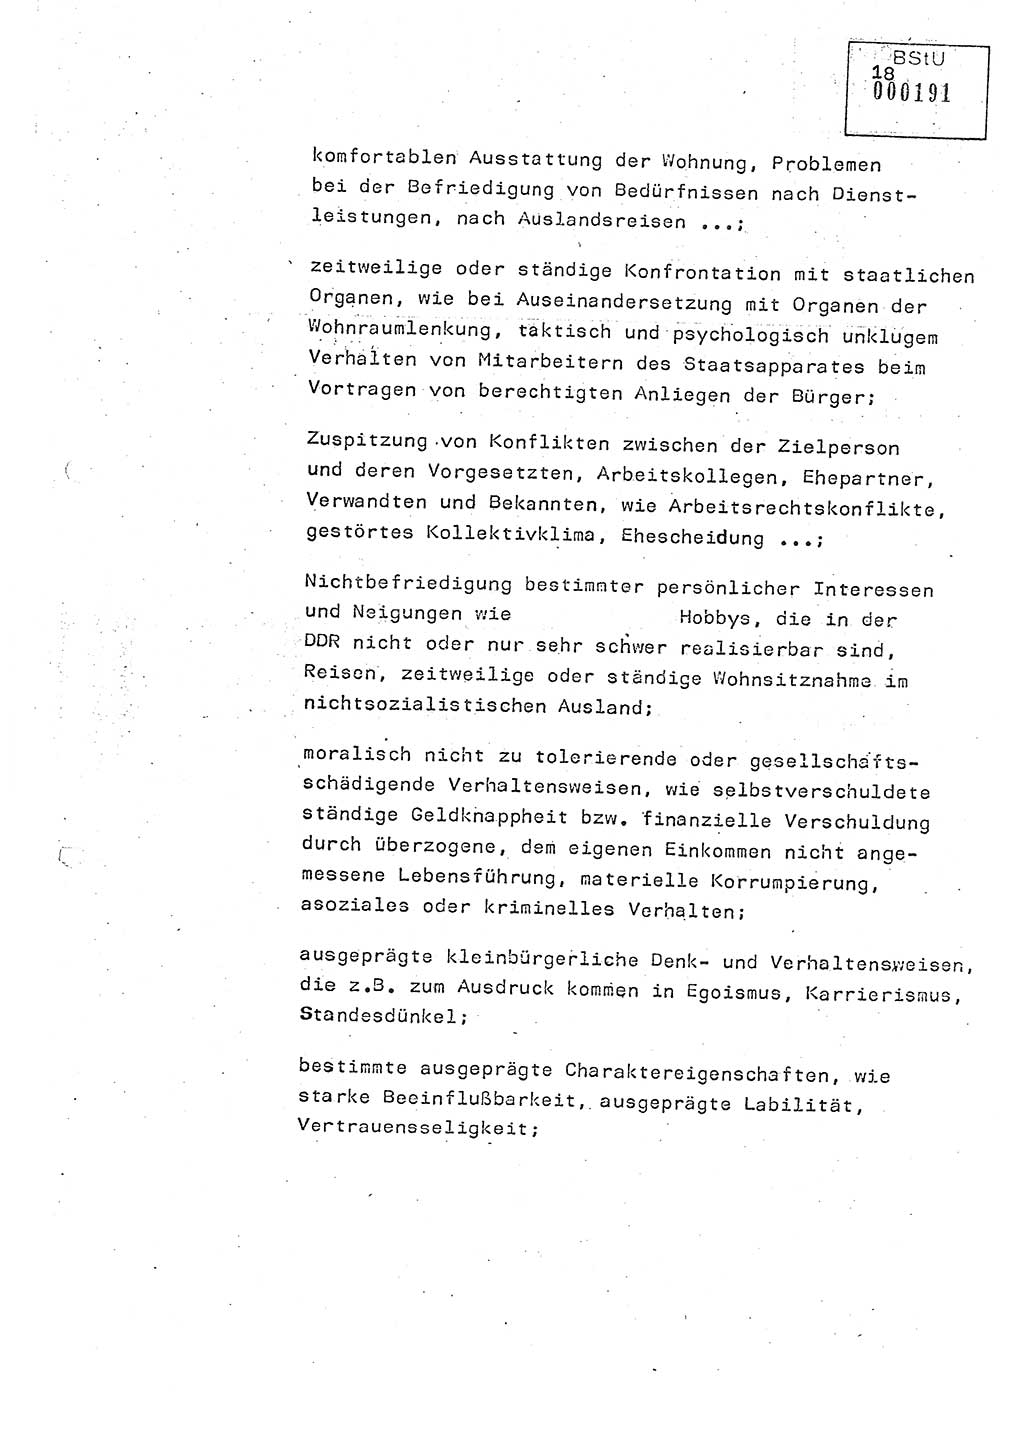 Studienmaterial Ministerium für Staatssicherheit (MfS) [Deutsche Demokratische Republik (DDR)], Hauptabteilung (HA) Ⅸ/ Auswertungs- und Kontrollgruppe (AKG), Berlin ca. 1986, Seite 18 (Stud.-Mat. MfS DDR HA Ⅸ/AKG 1986, S. 18)